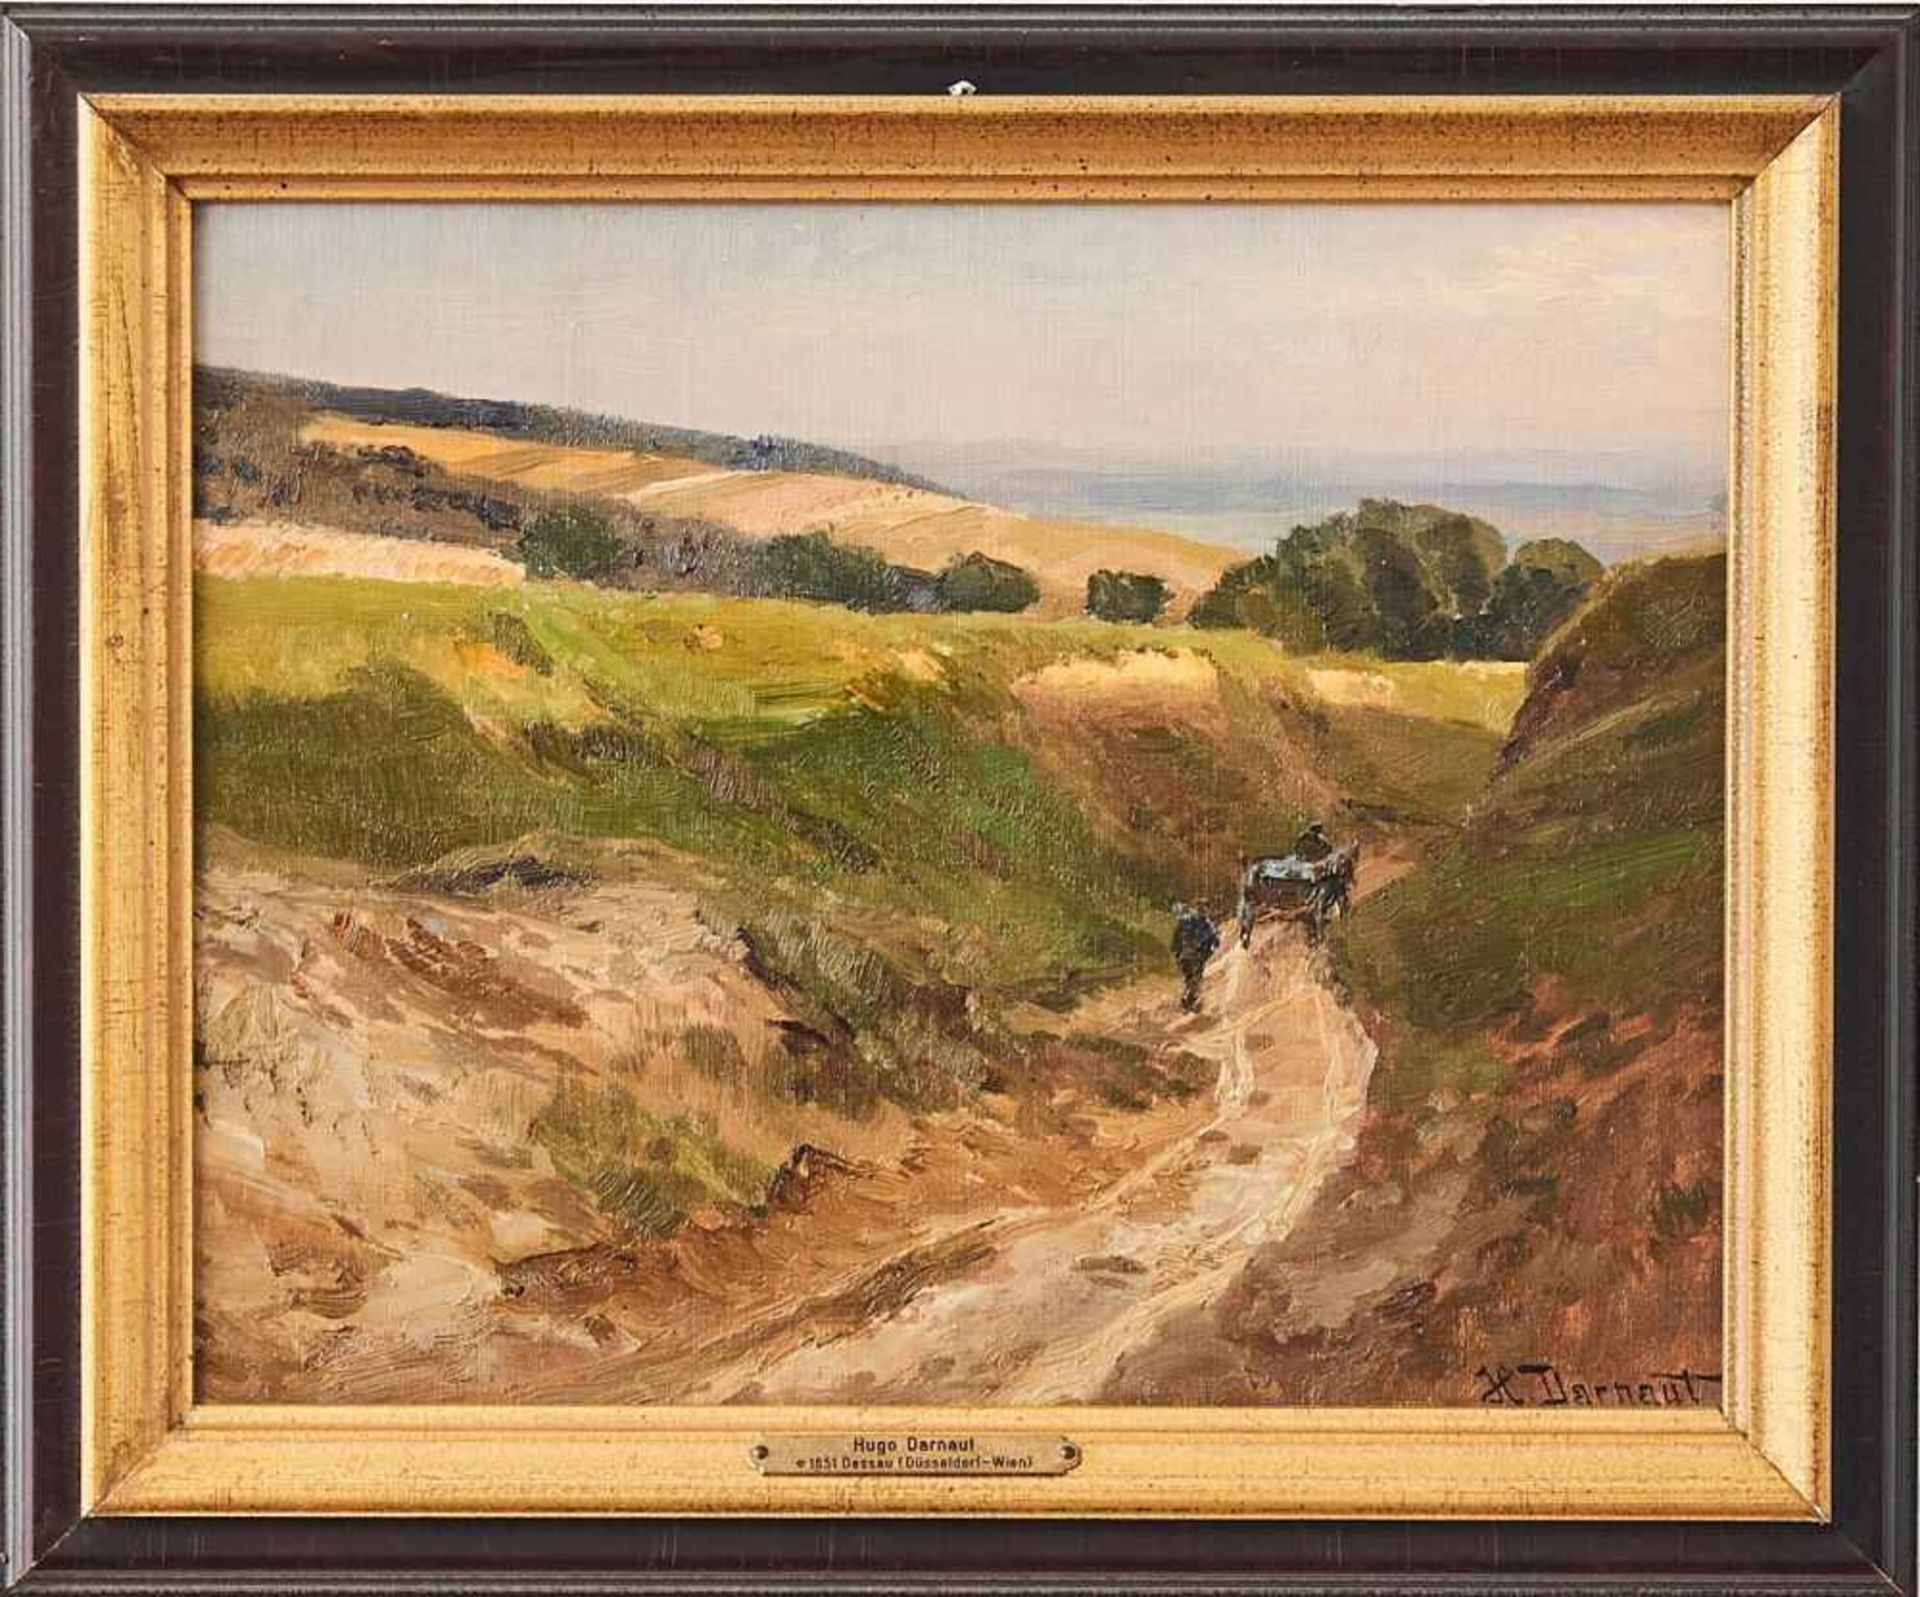 Weite LandschaftHugo Darnaut, (1851-1937)Rechts unten signiert "H. Darnaut", Öl auf Malkarton, - Image 2 of 2